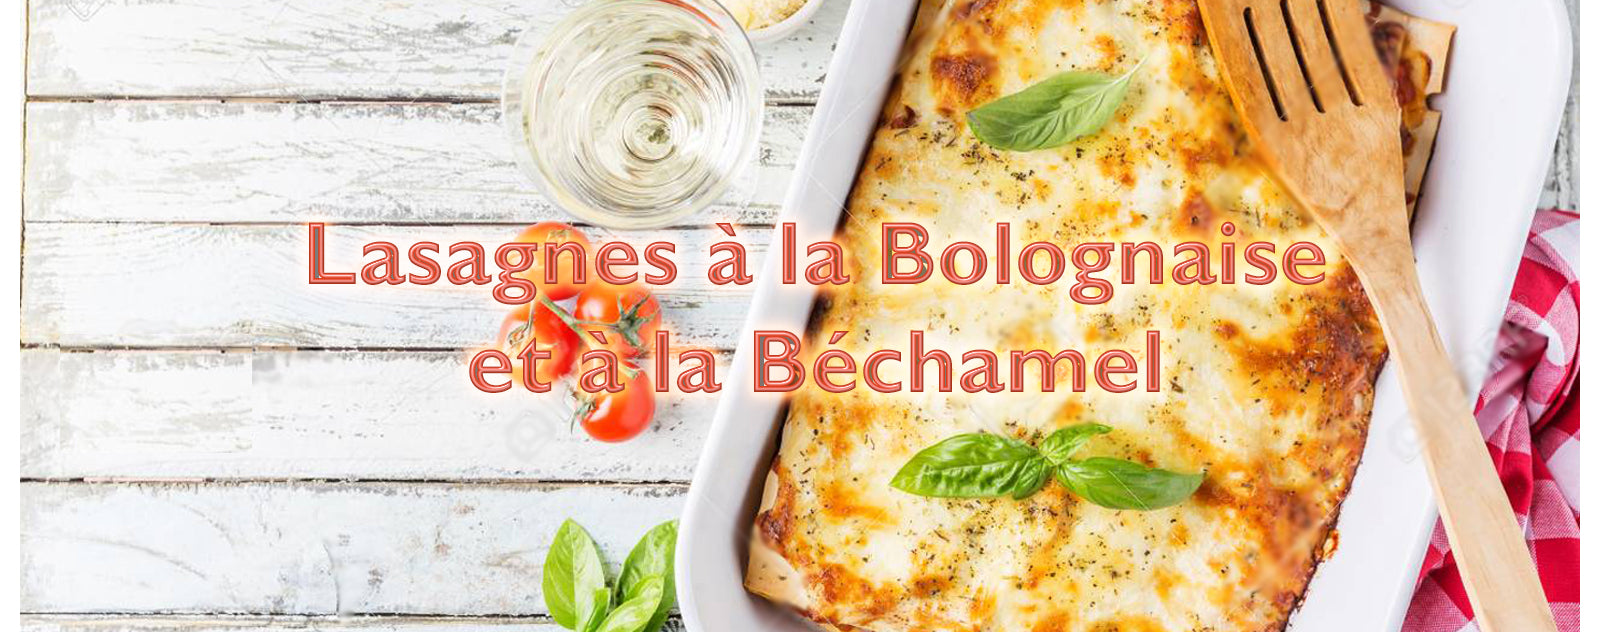 Lasagnes bolognaise : Recette de Lasagnes bolognaise